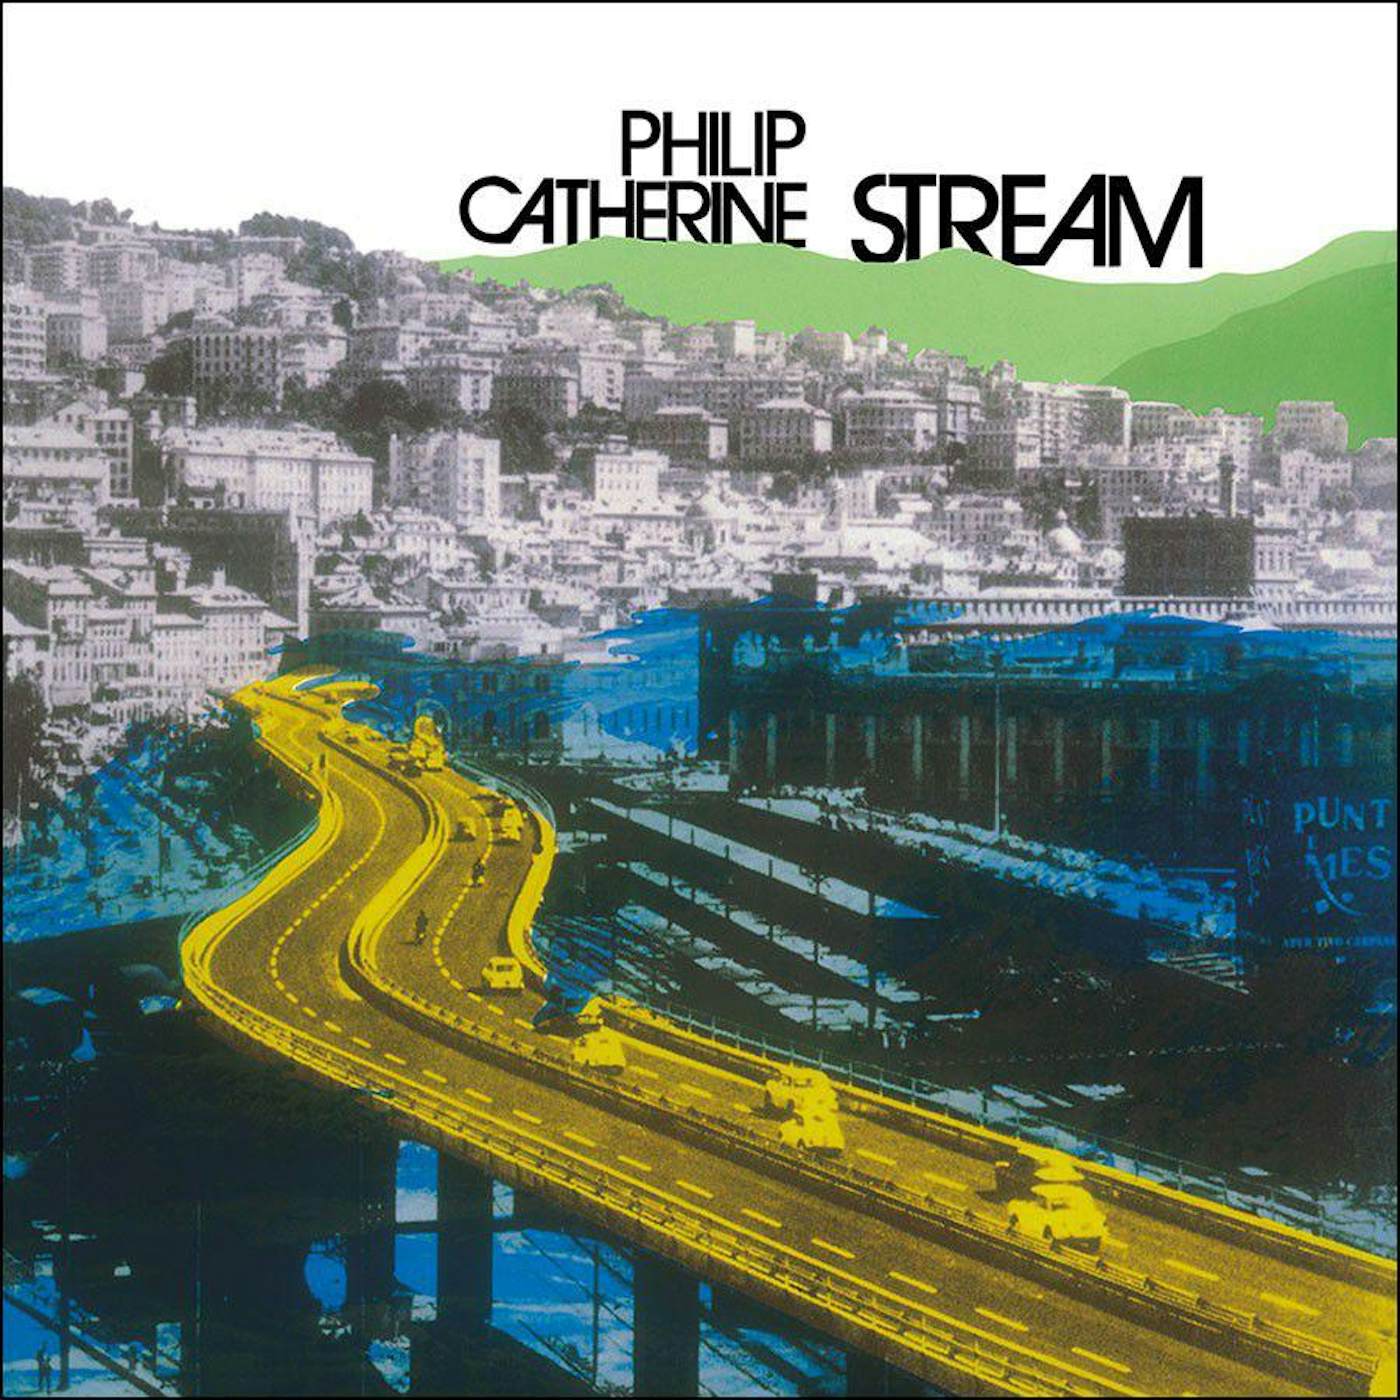 Philip Catherine Stream Vinyl Record